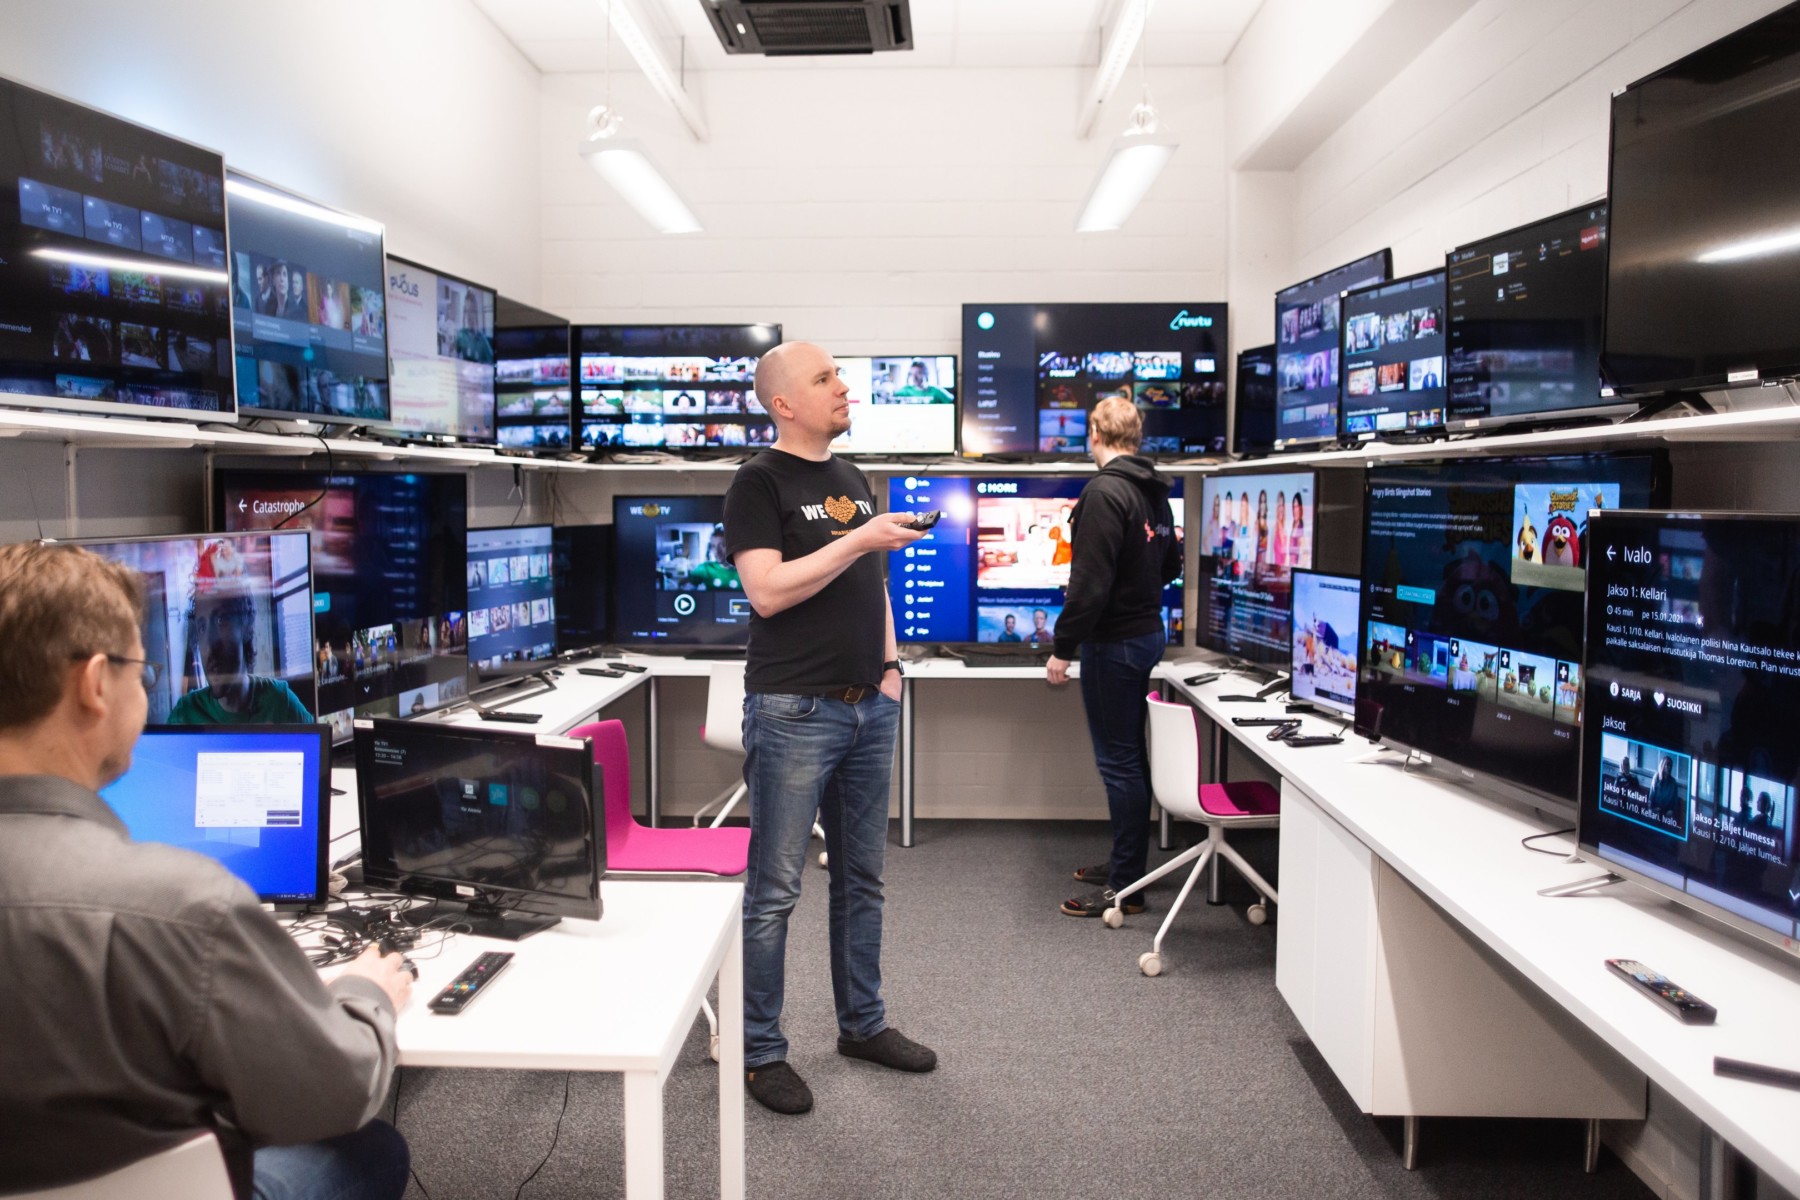 Vários homens trabalham em uma sala onde todas as paredes são forradas com prateleiras contendo várias telas de TV.